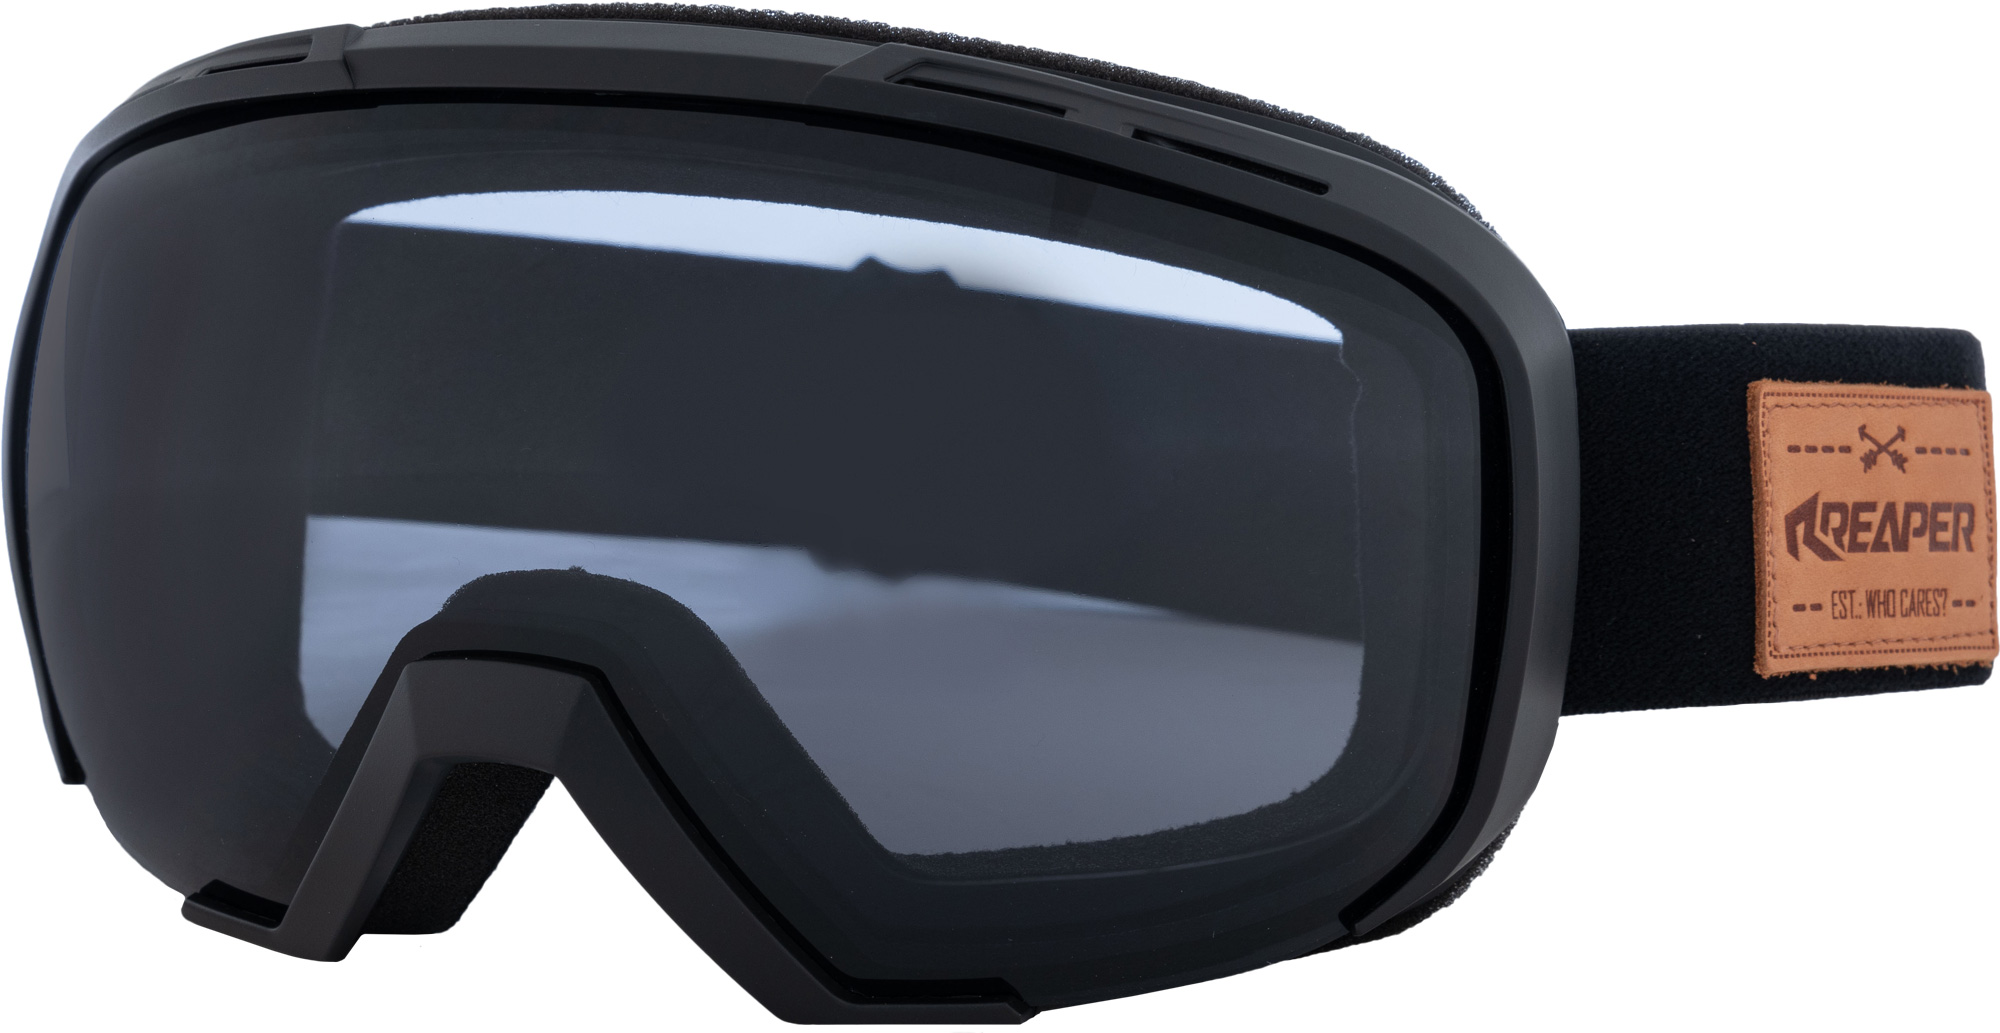 Snowboard goggles